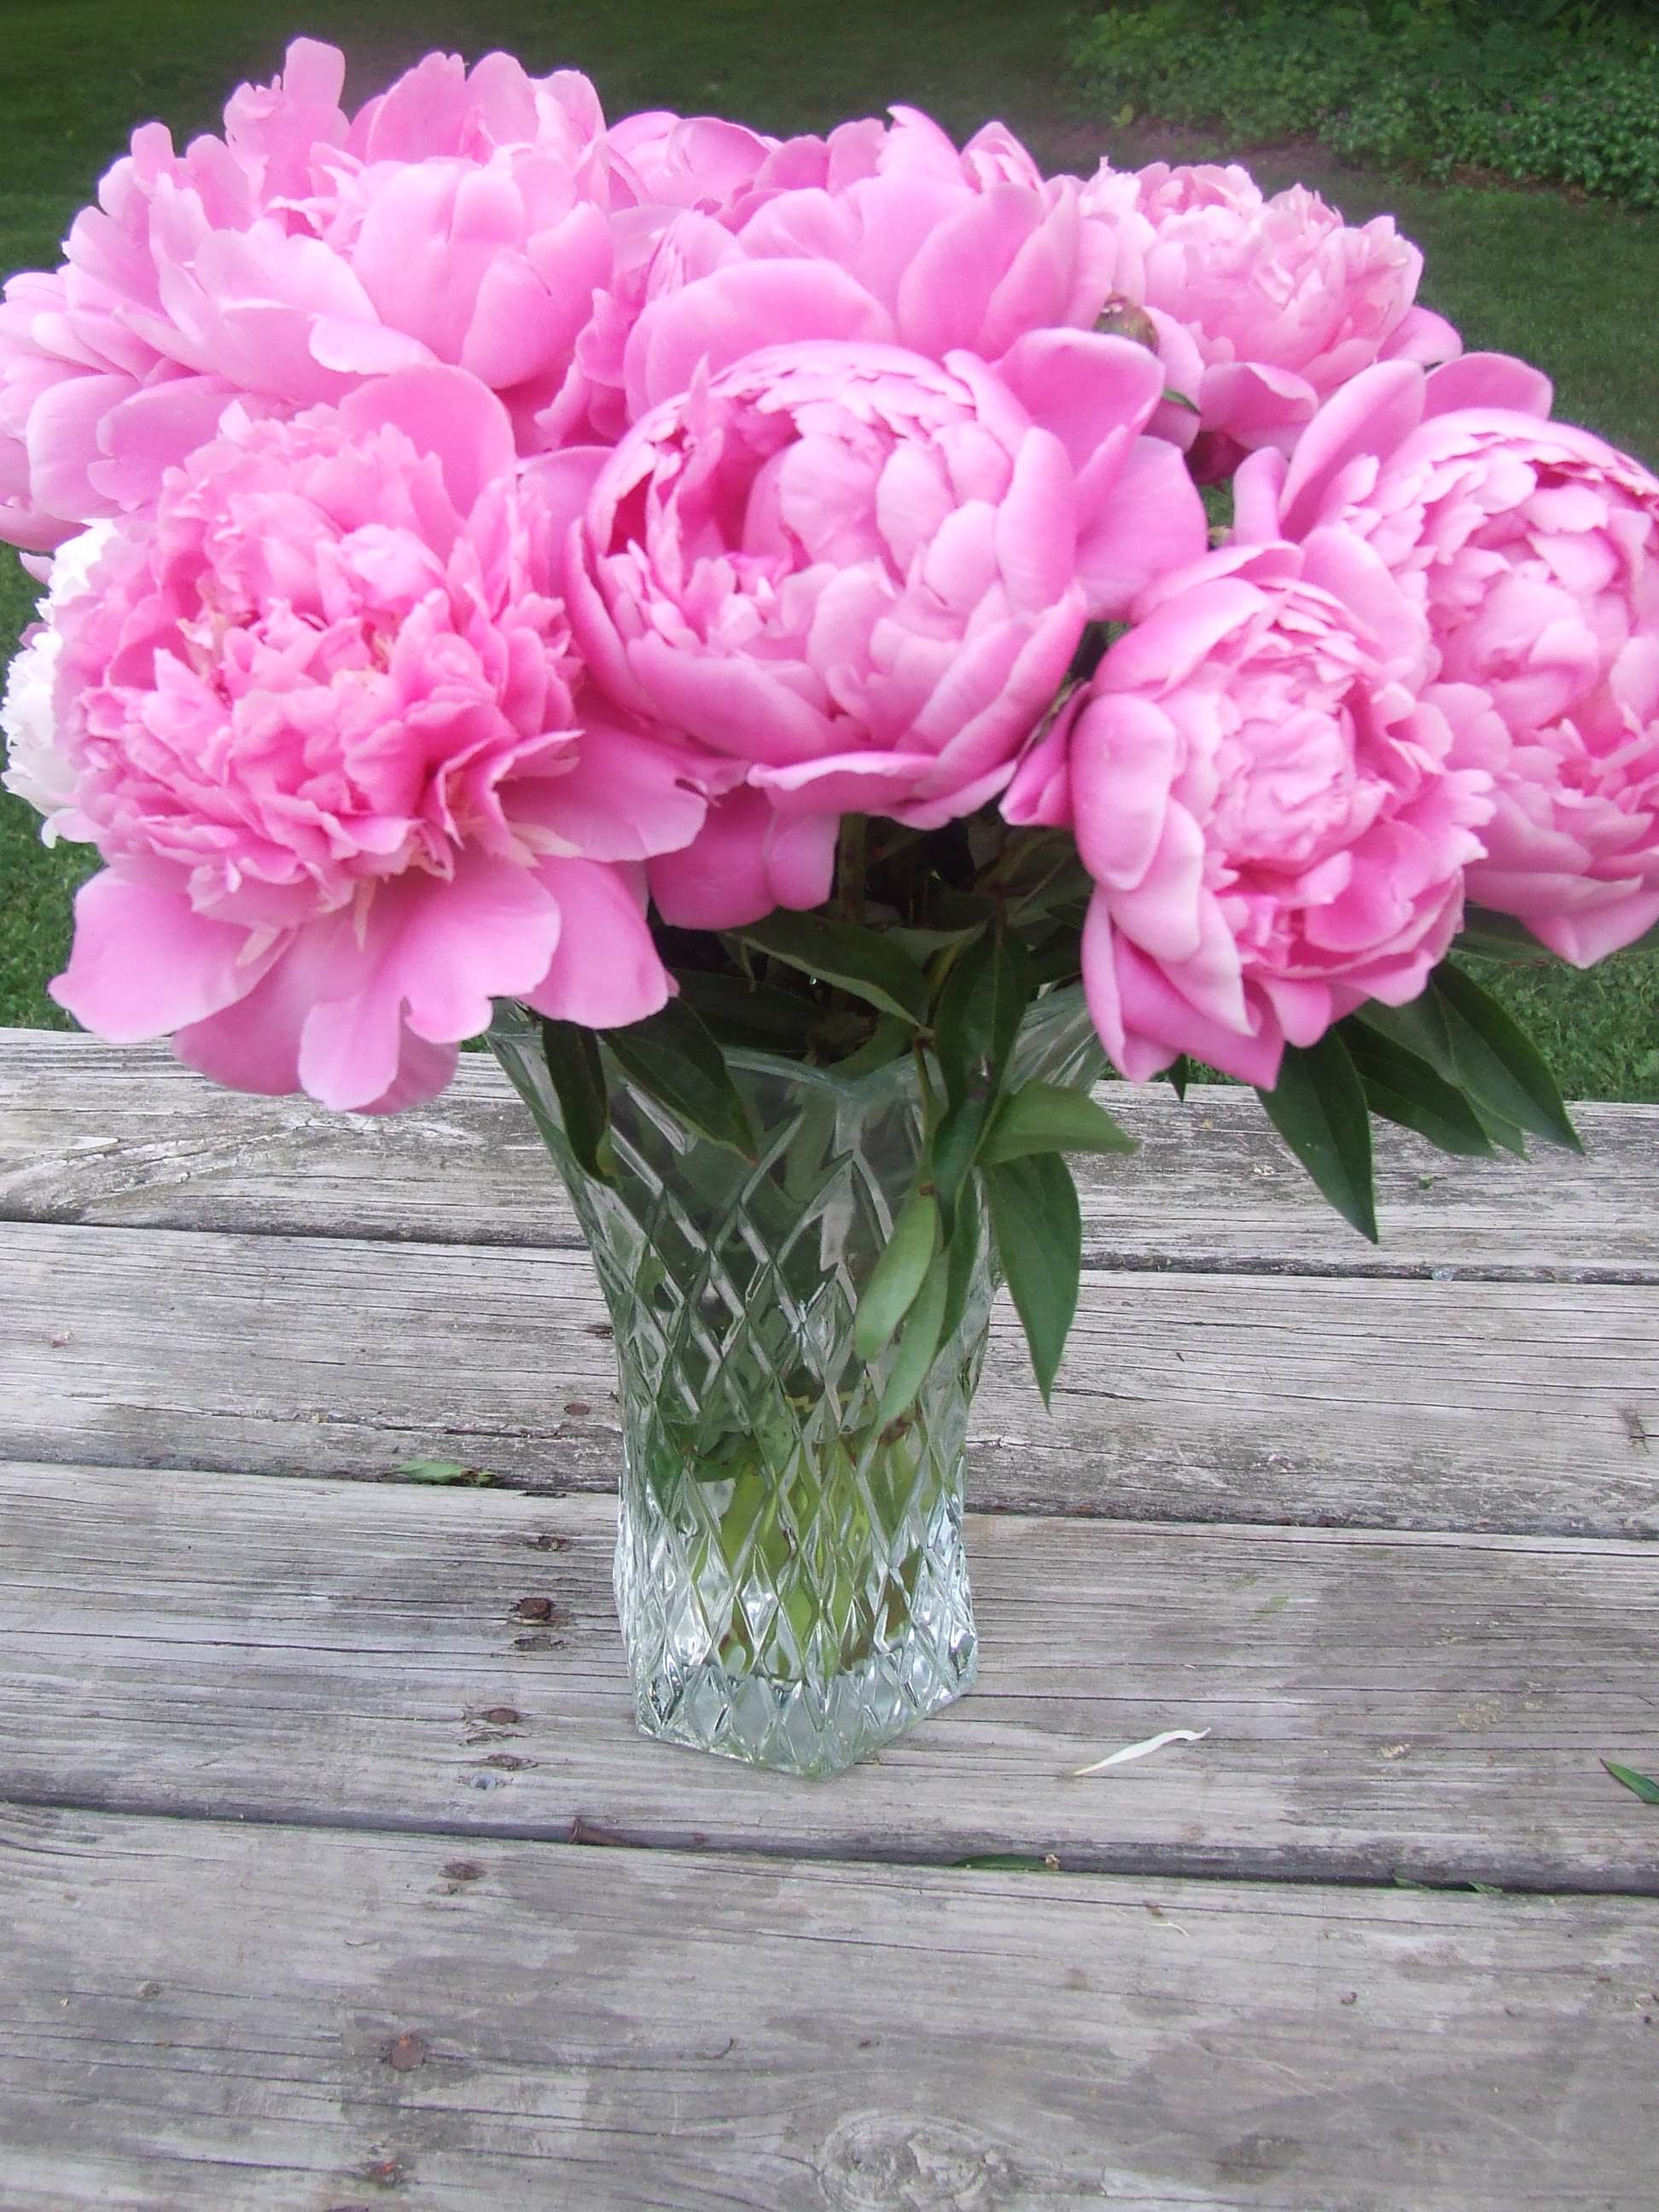 Vase_of_Pink_Peonies_Flowers